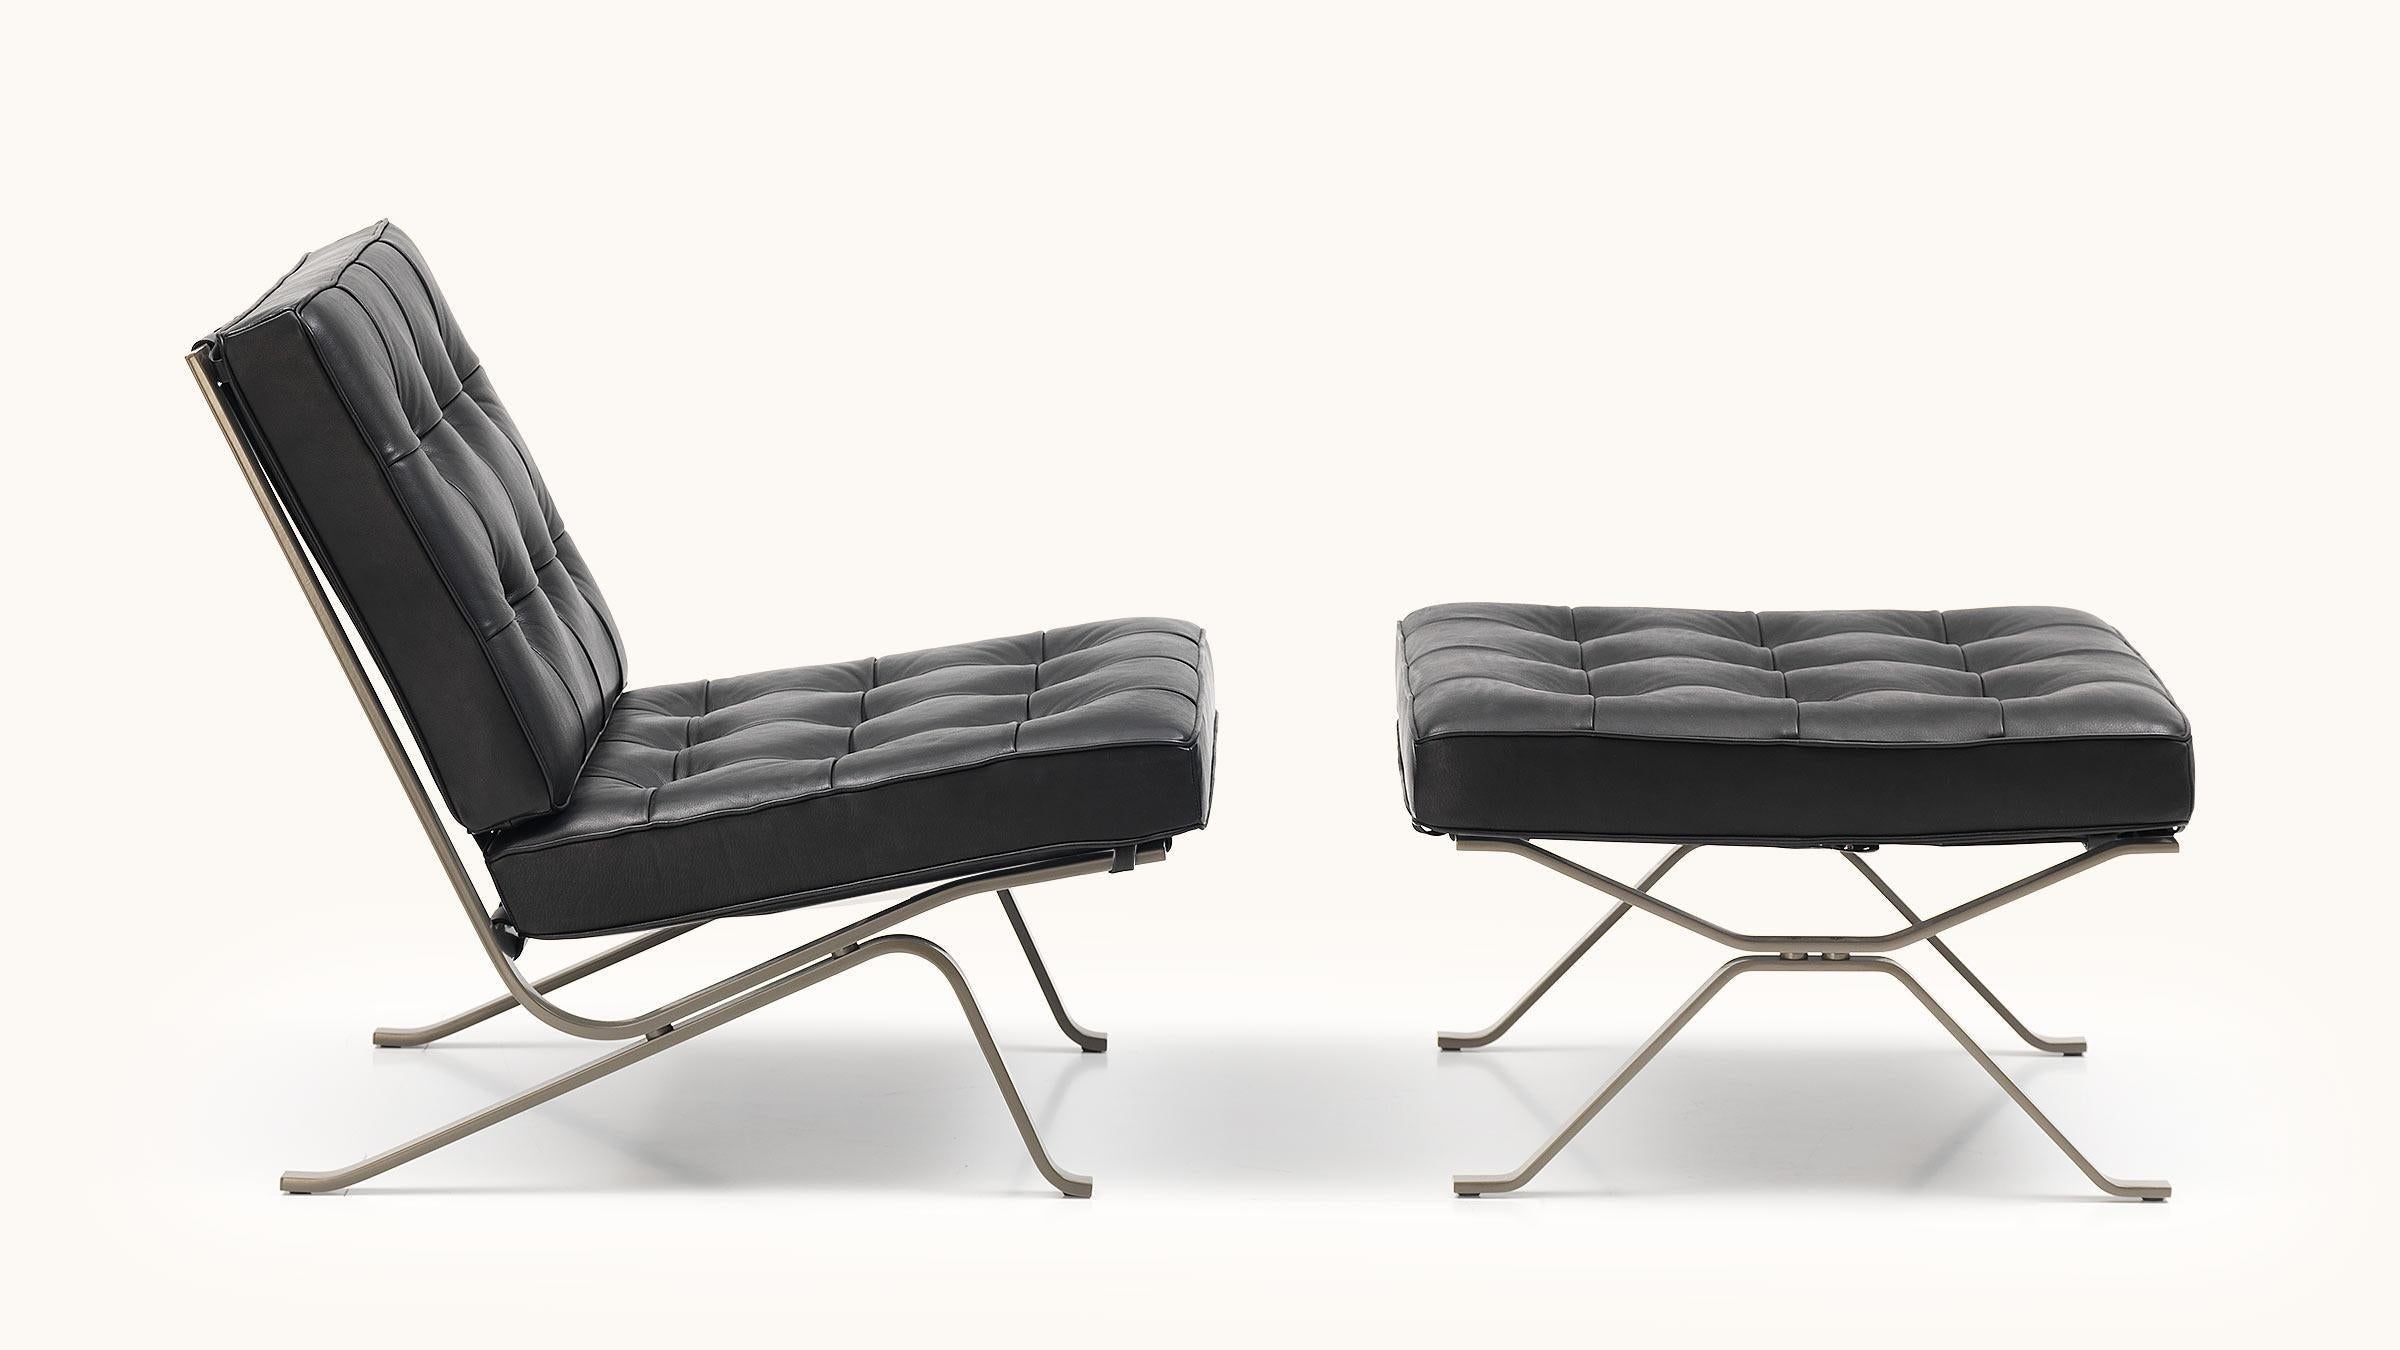 Bereits 1954 entwarf Robert Haussmann seinen berühmten Metallsessel RH-301 aus verchromtem Flachstahl als Hommage an Mies van der Rohe - seit 1999 ist der RH-301 bei de Sede zu Hause. Mit diesem Sessel griff Haussmann auf die Bauhaus-Maxime zurück,